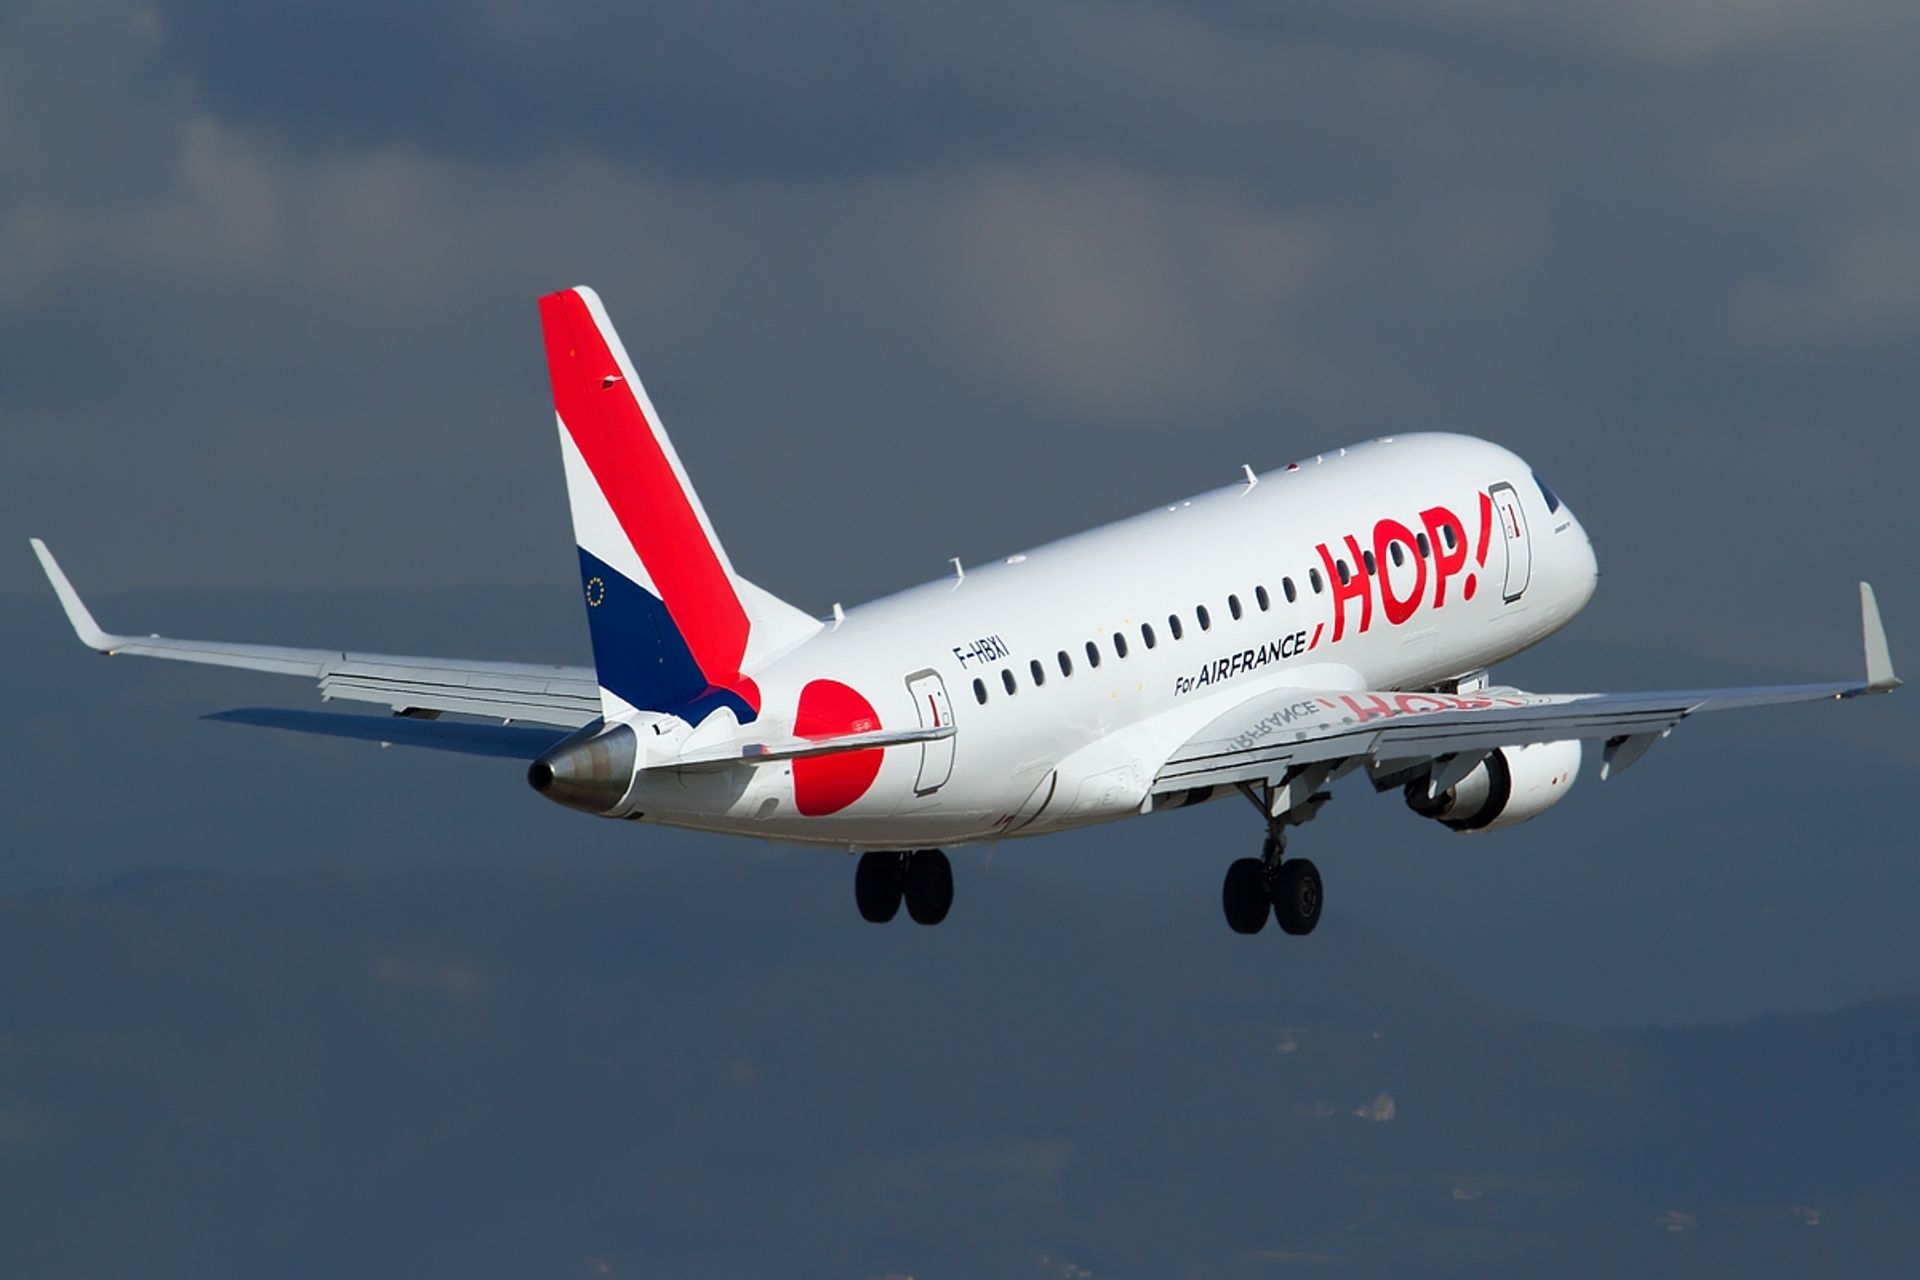  AIR France uruchomi nowe połączenie lotnicze Wrocław-Paryż